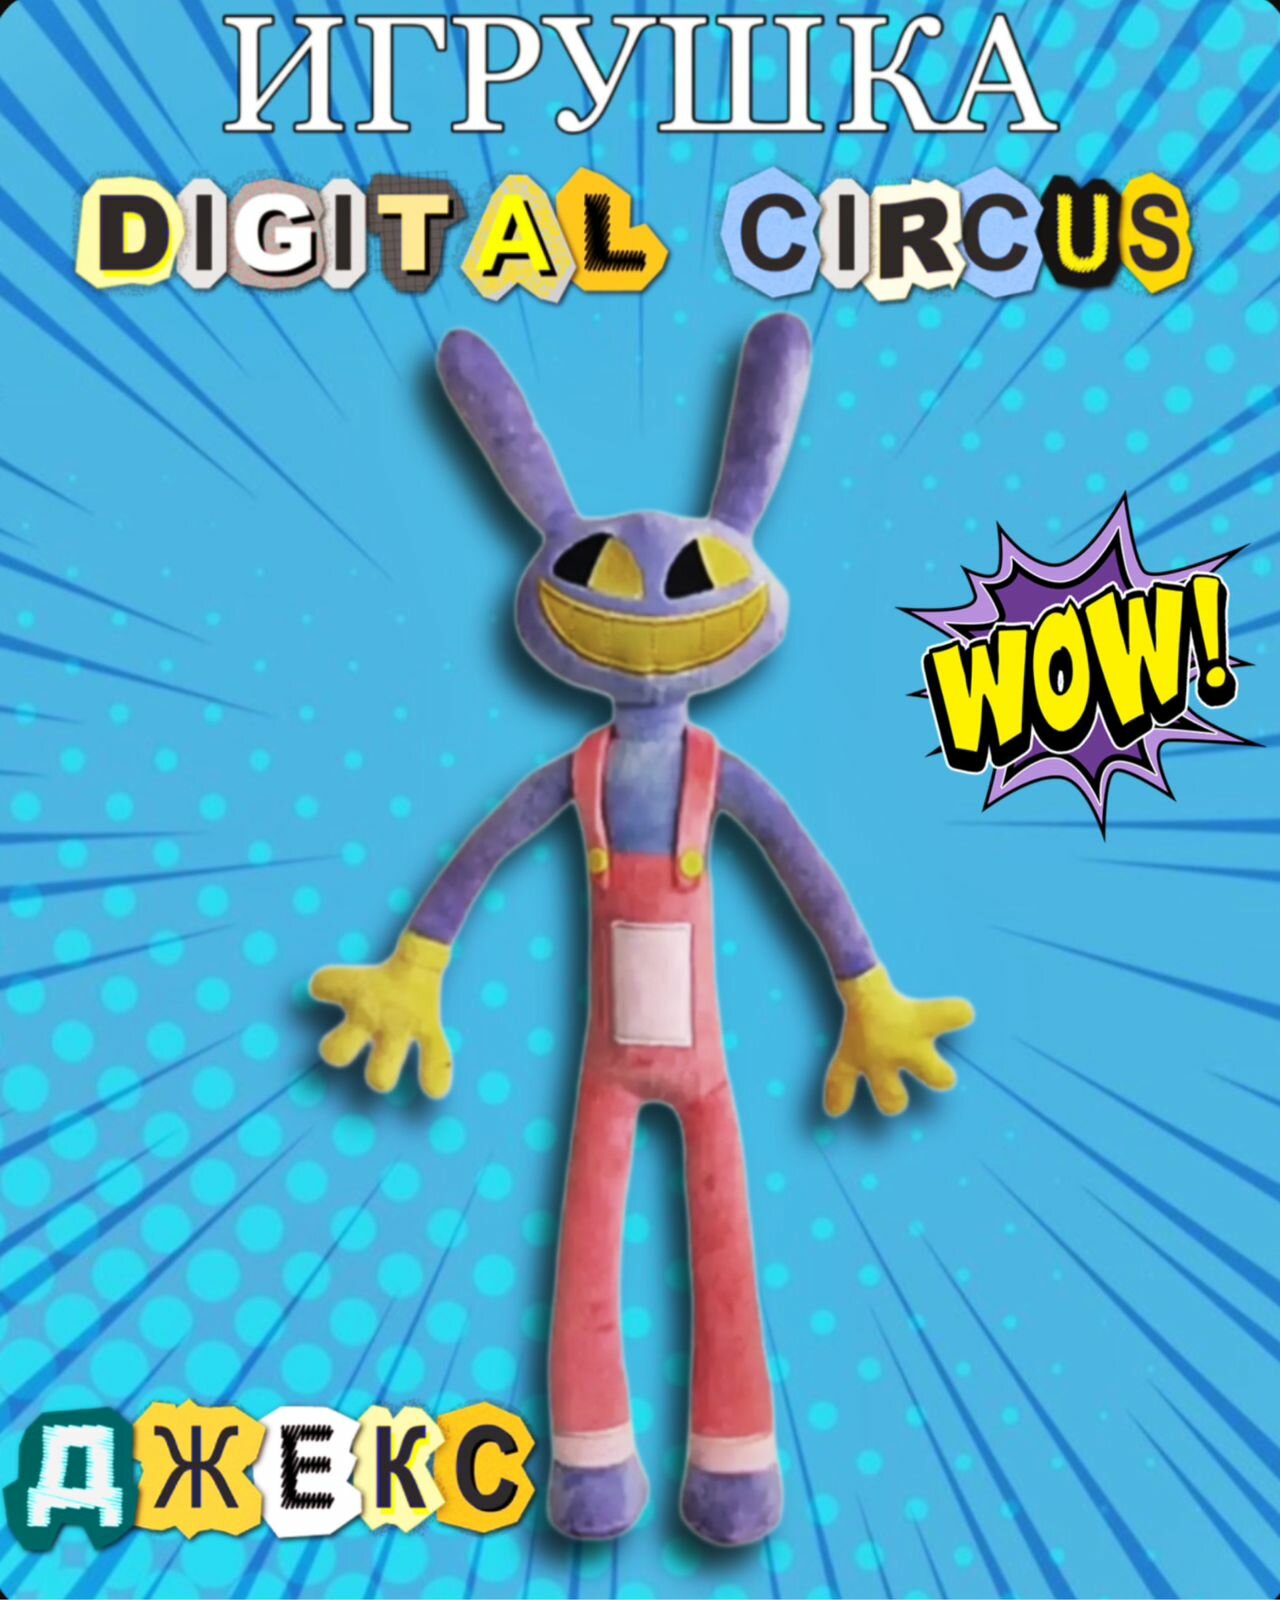 Удивительный цифровой цирк/заяц Джекс/ The Amazing Digital Circus мягкая игрушка 40 см герои мультсериала